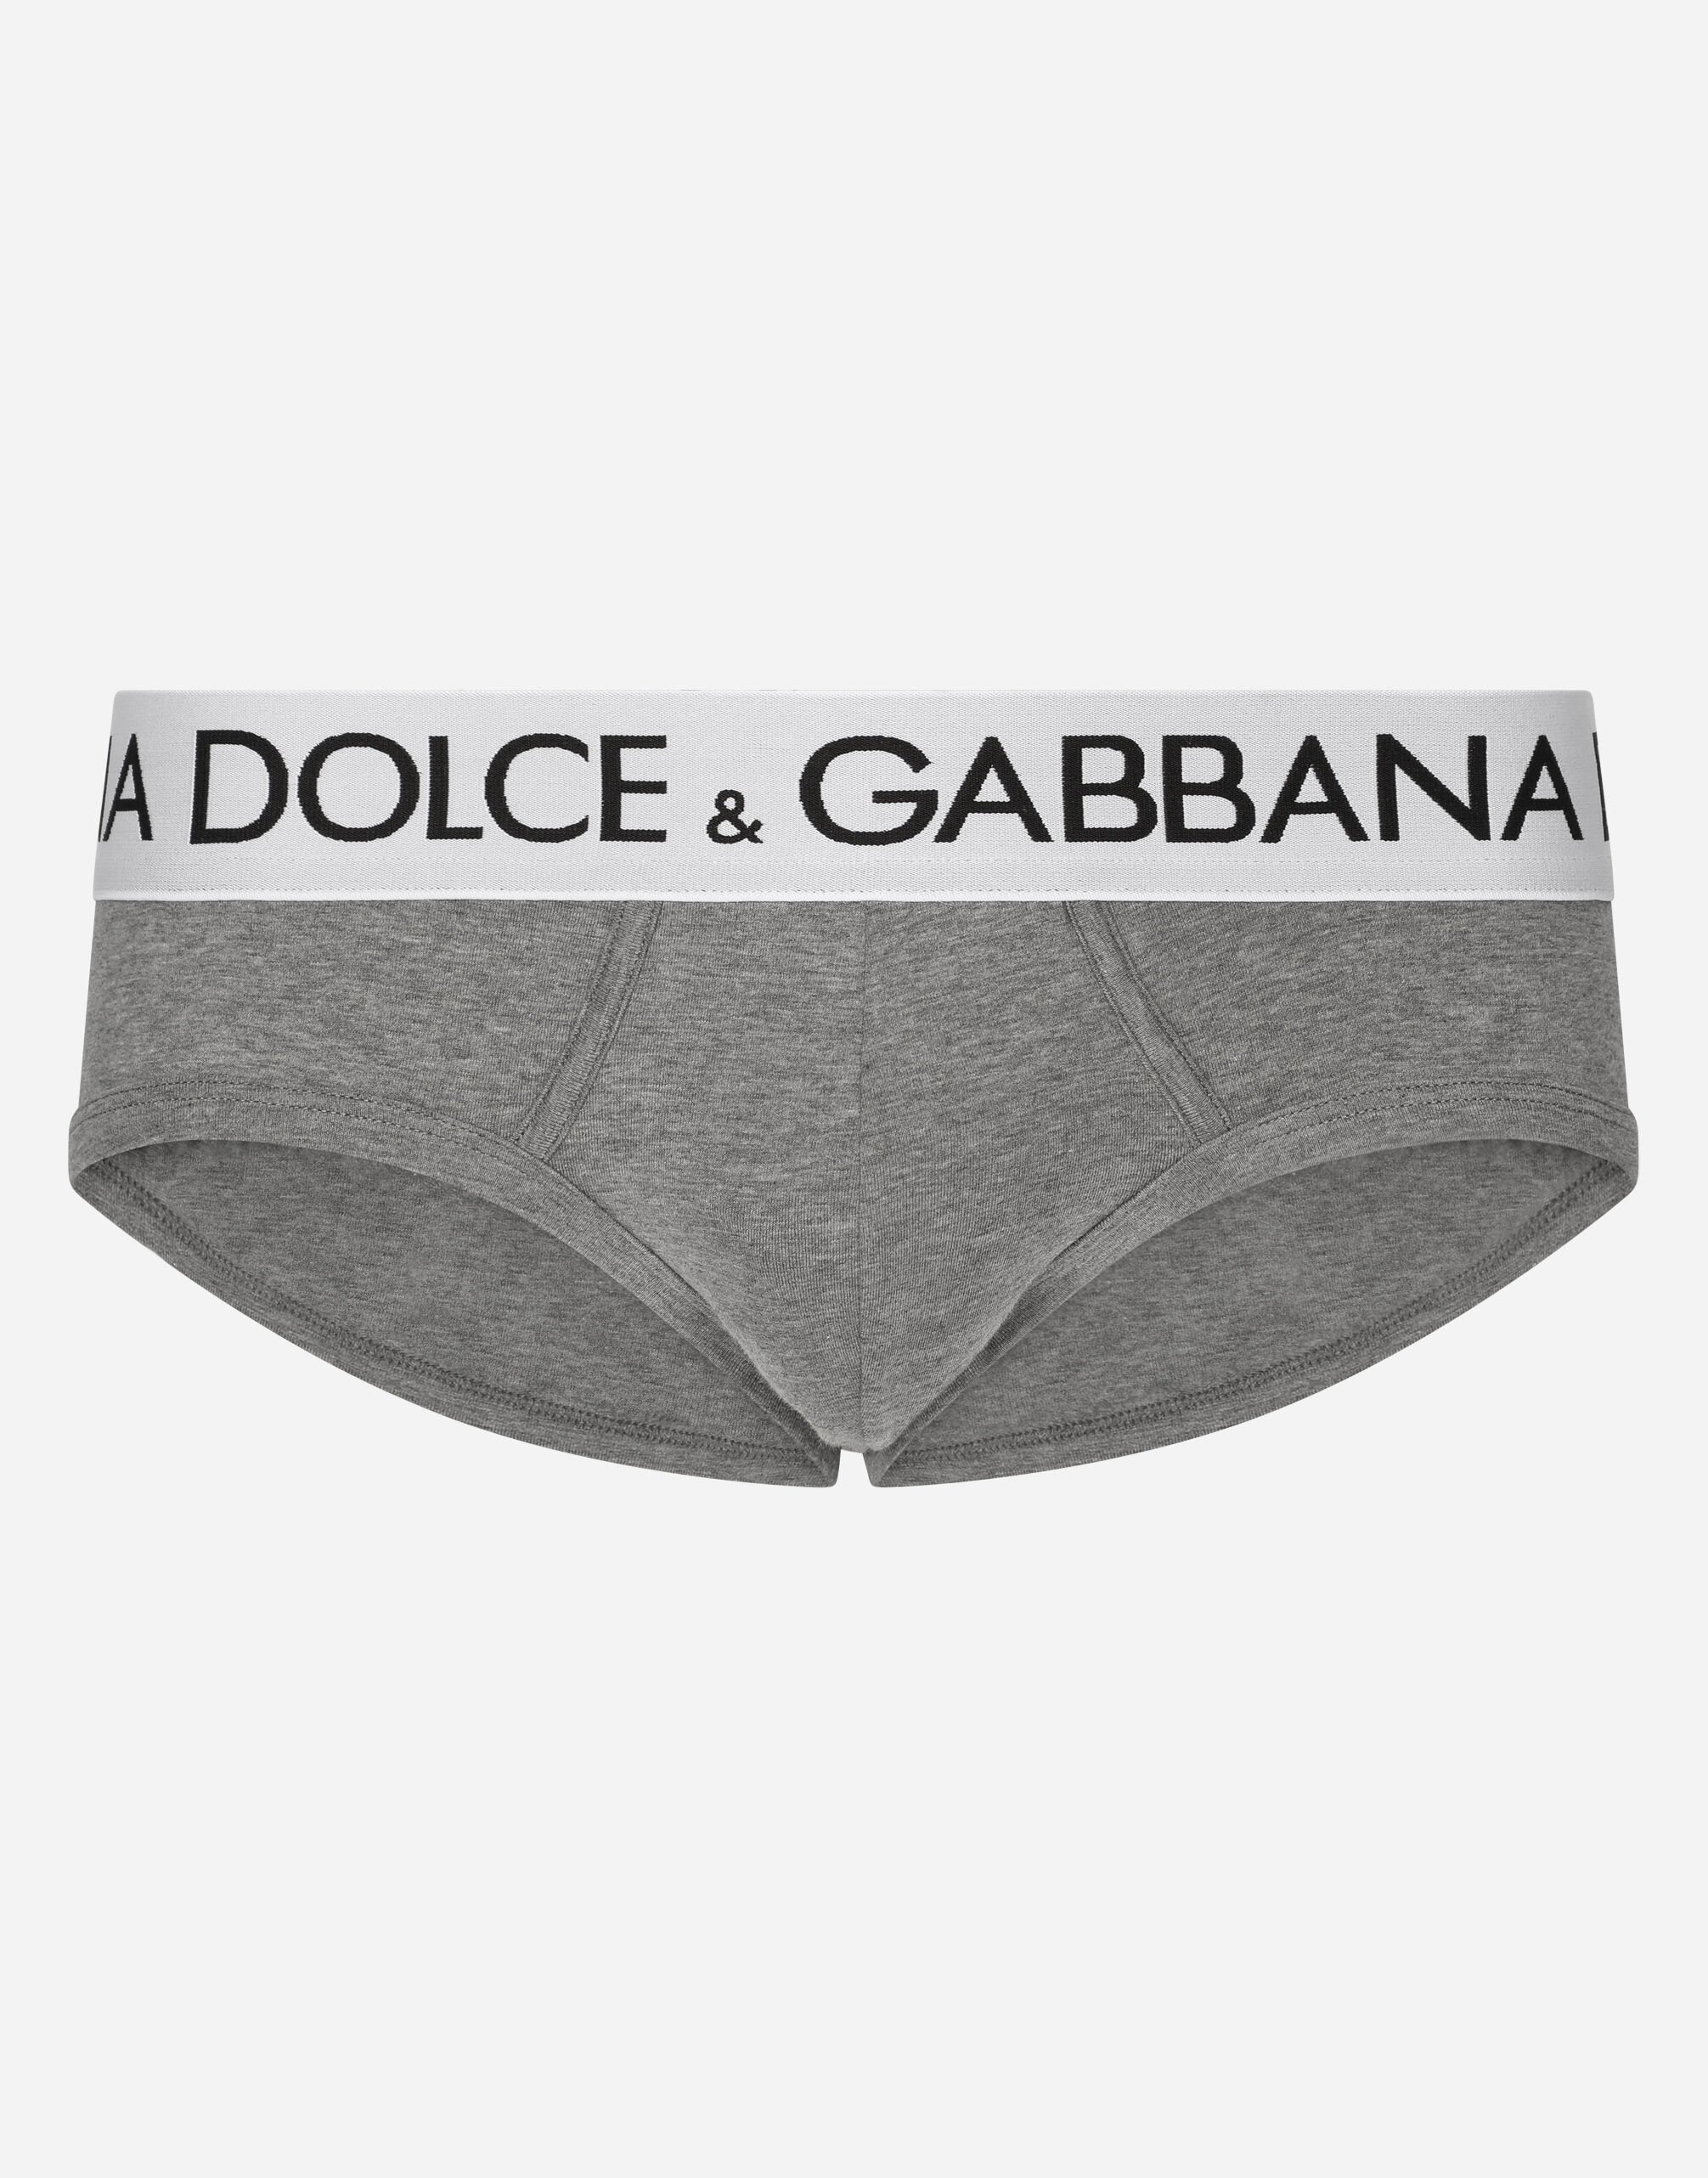 Dolce & Gabbana Two-way stretch jersey Brando briefs Grey M9C07JONN95